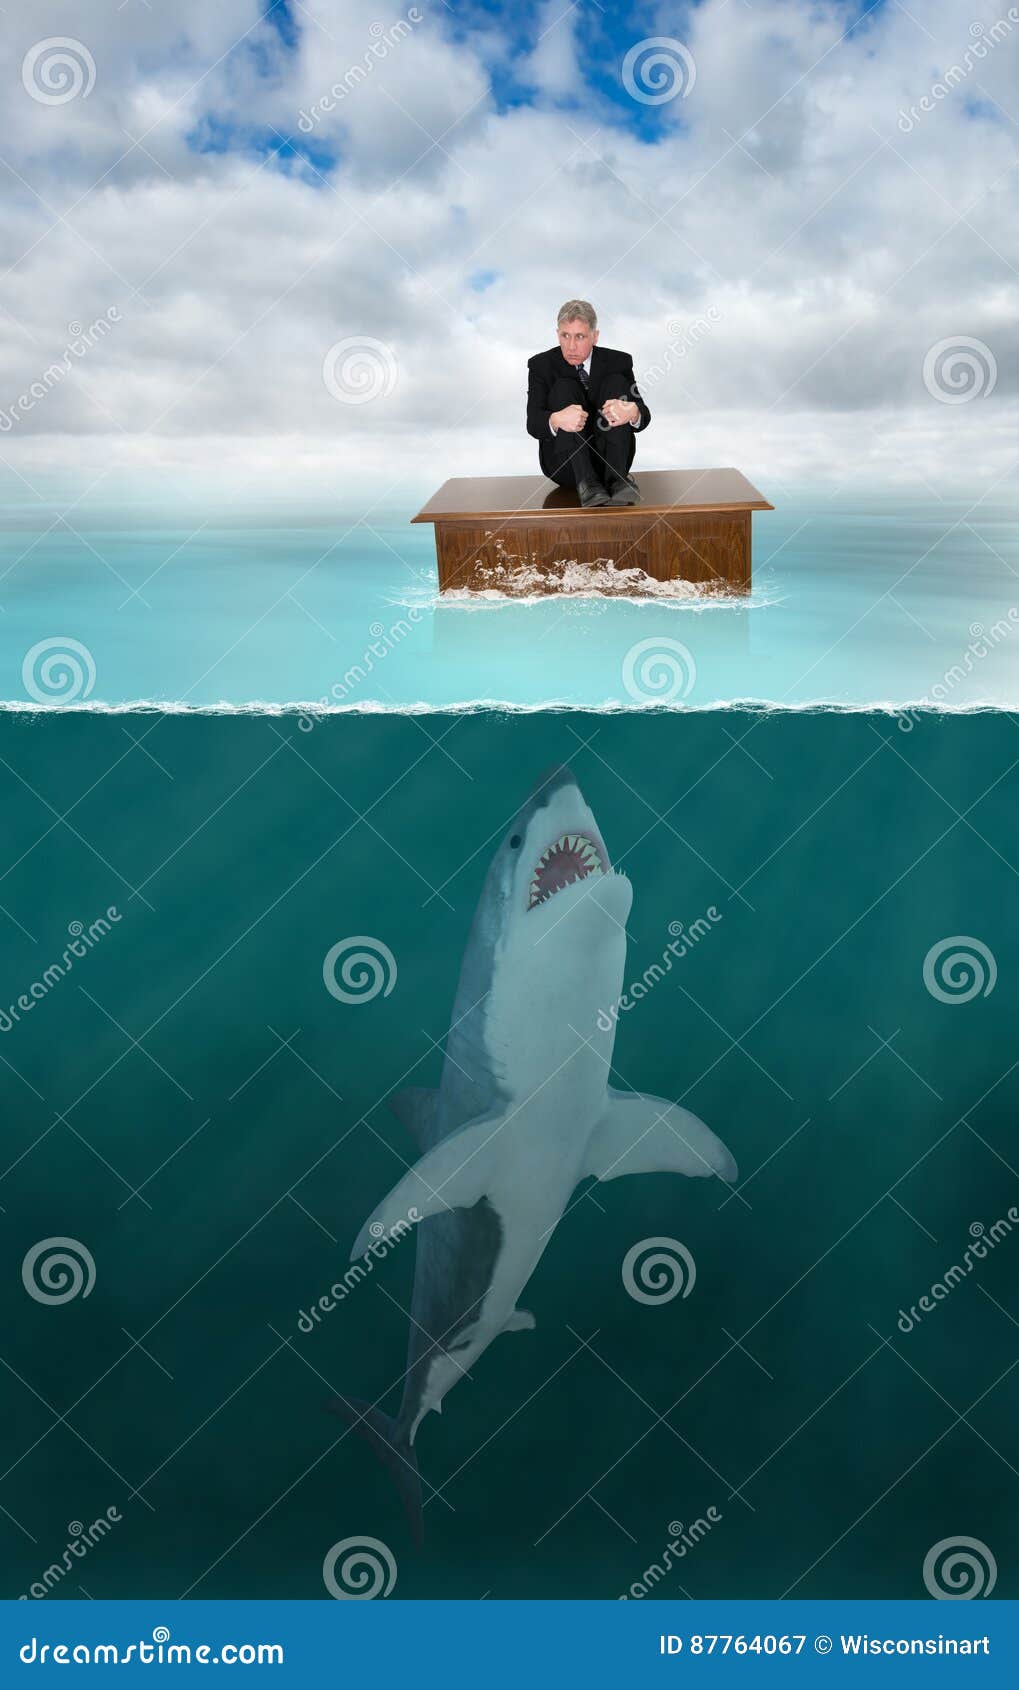 risk management, lawyer, shark, sales